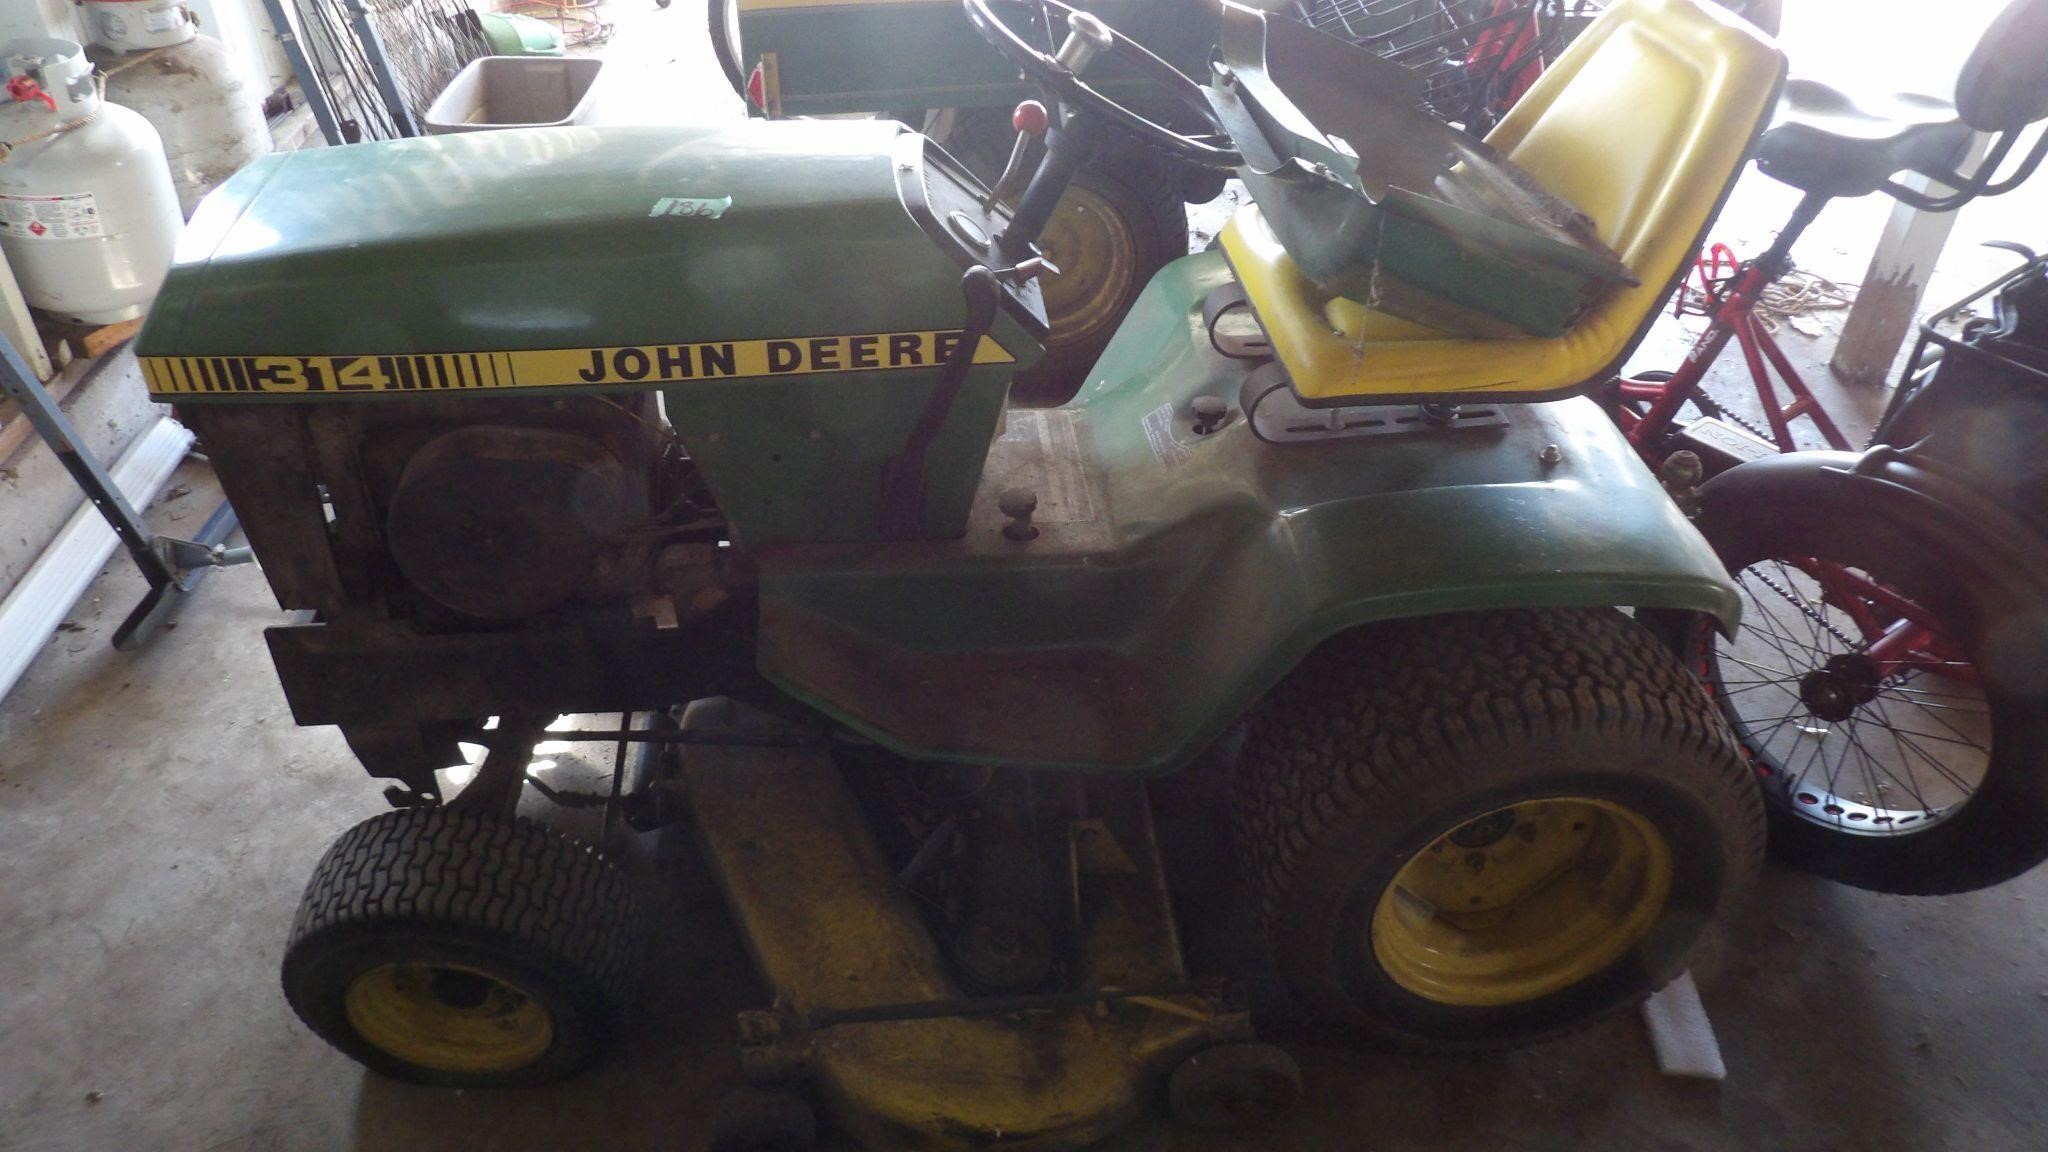 314 John Deere Lawn Tractor W/42"